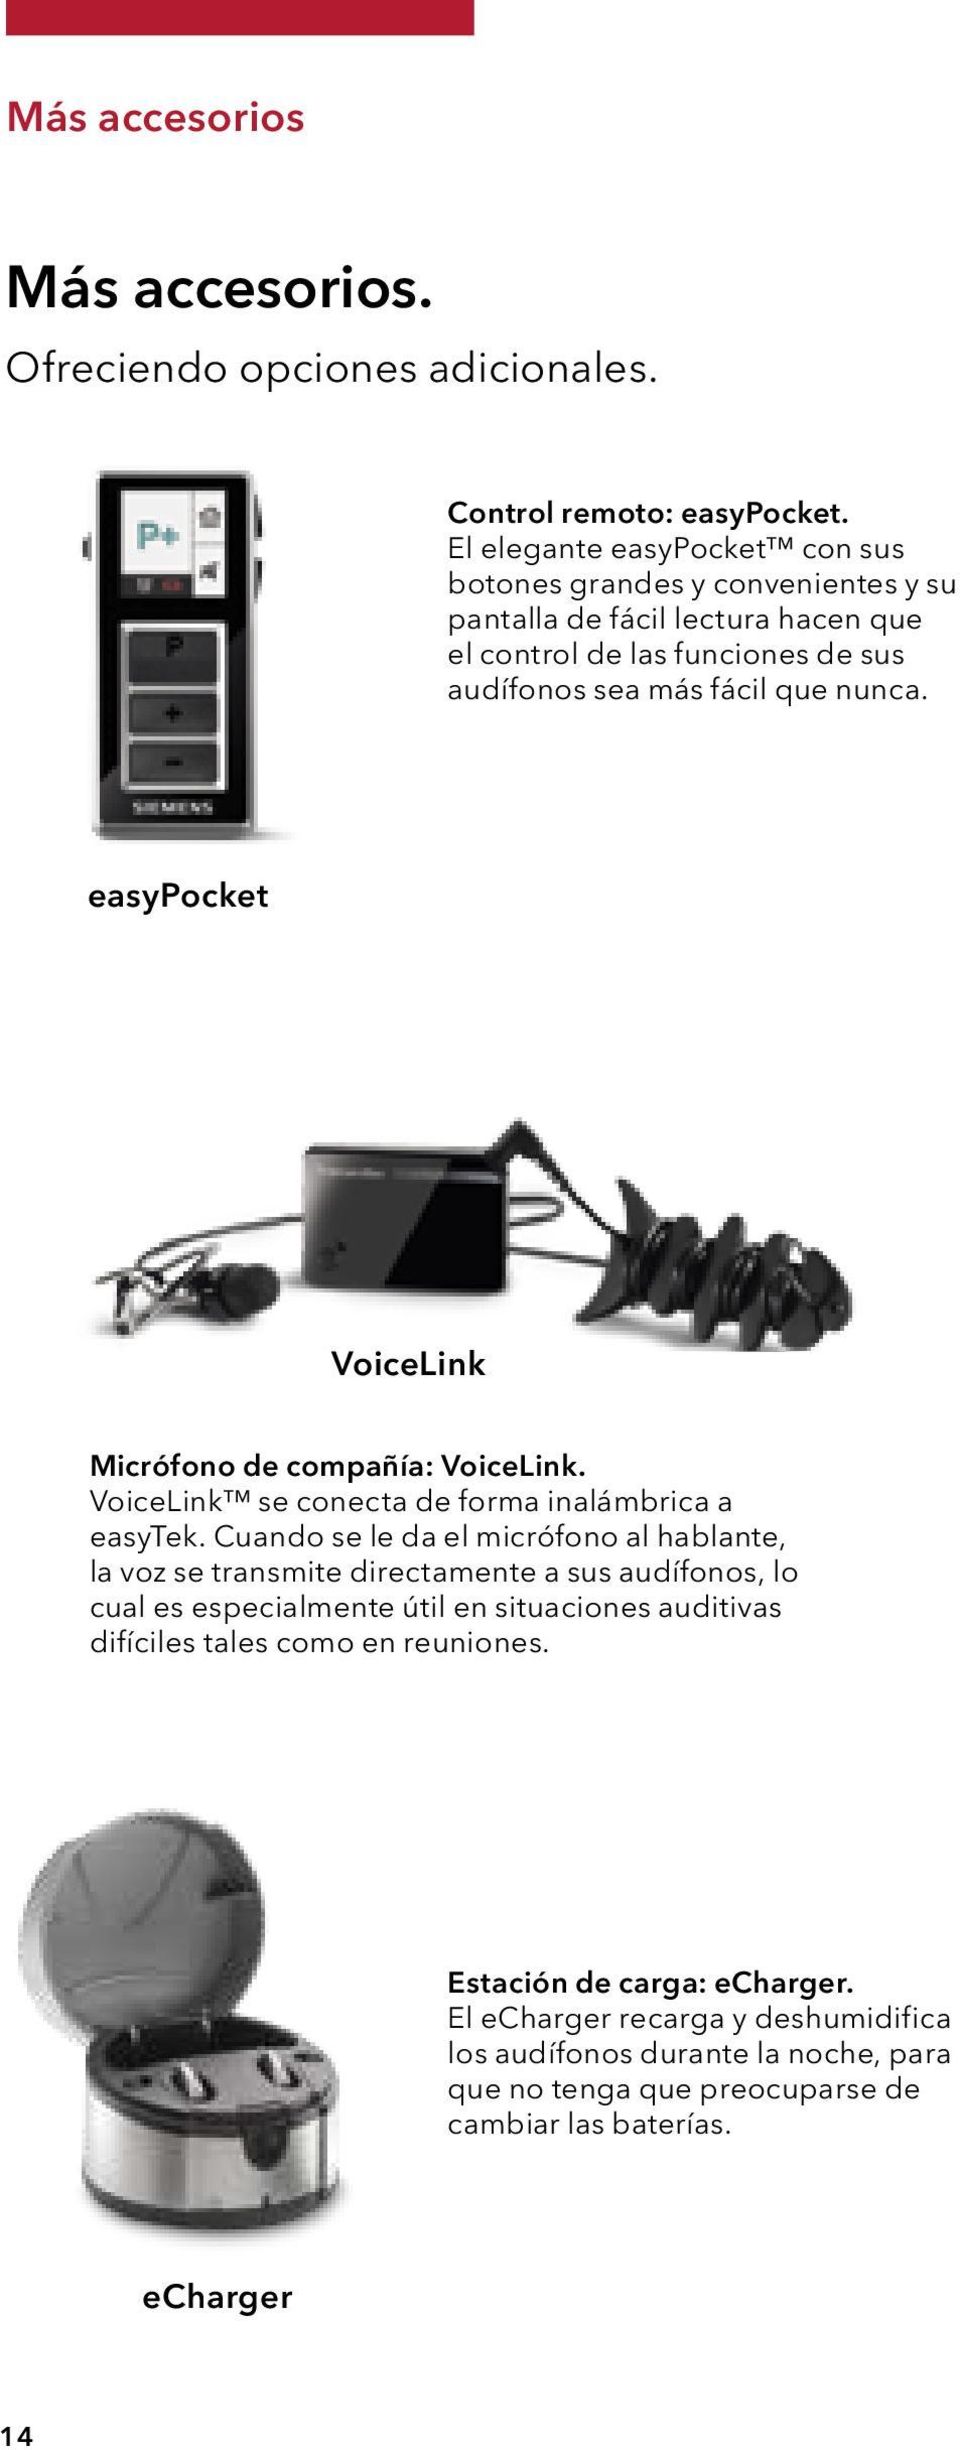 easypocket VoiceLink Micrófono de compañía: VoiceLink. VoiceLink se conecta de forma inalámbrica a easytek.